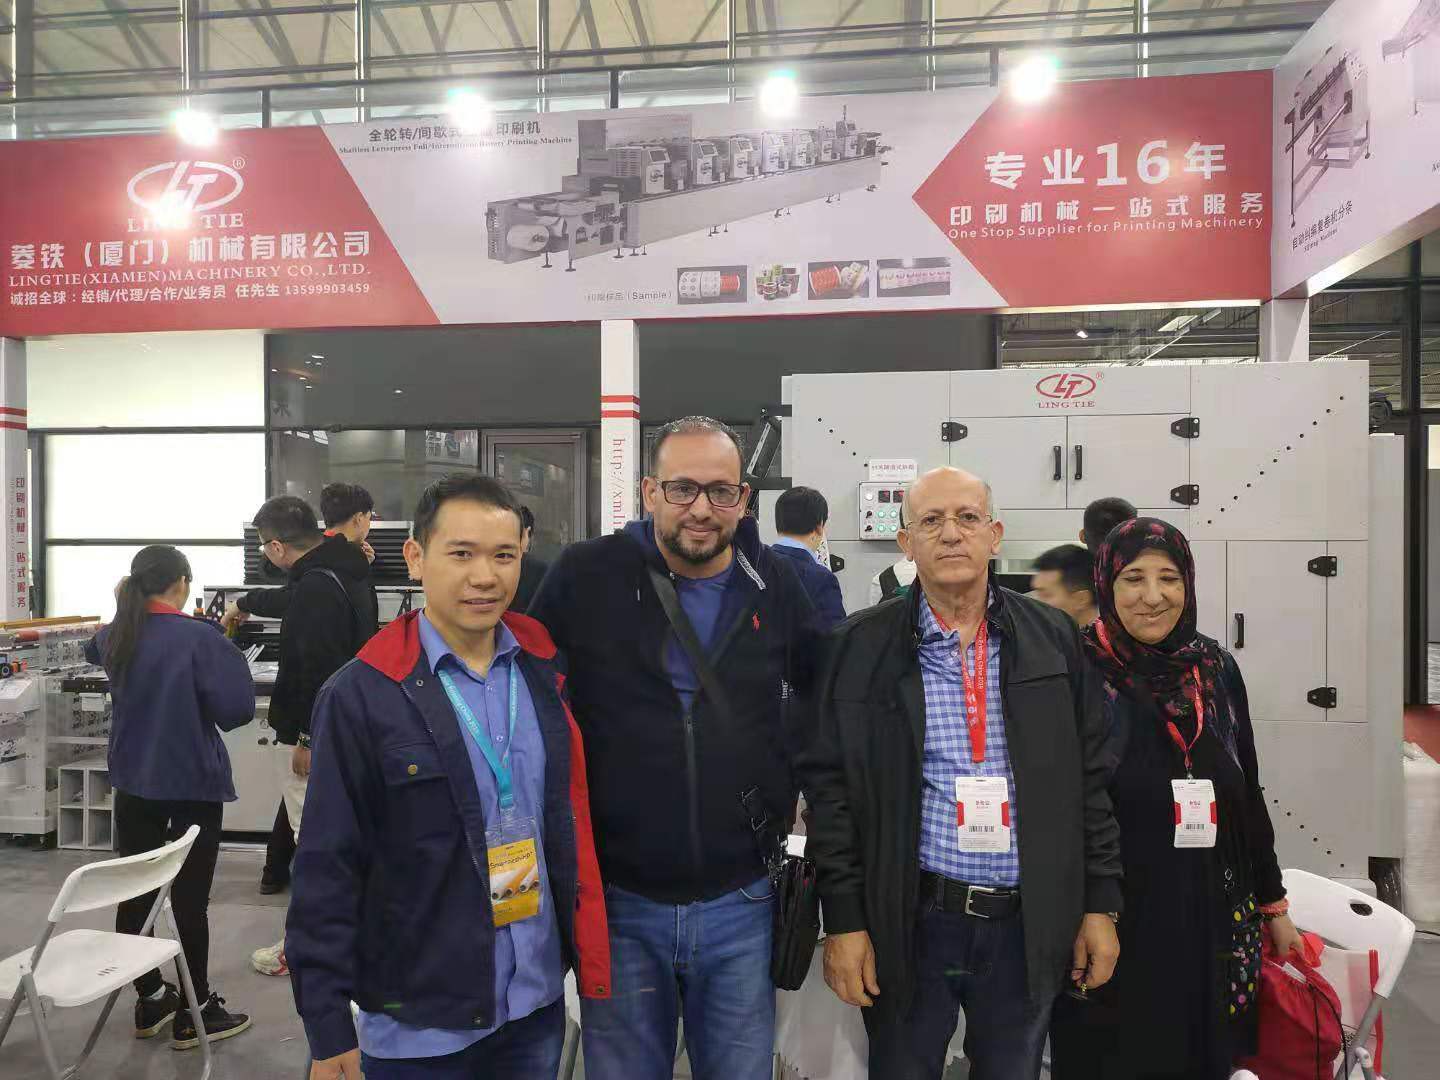 शंघाई में टेक्सटाइल डिजिटल प्रिंटिंग शो